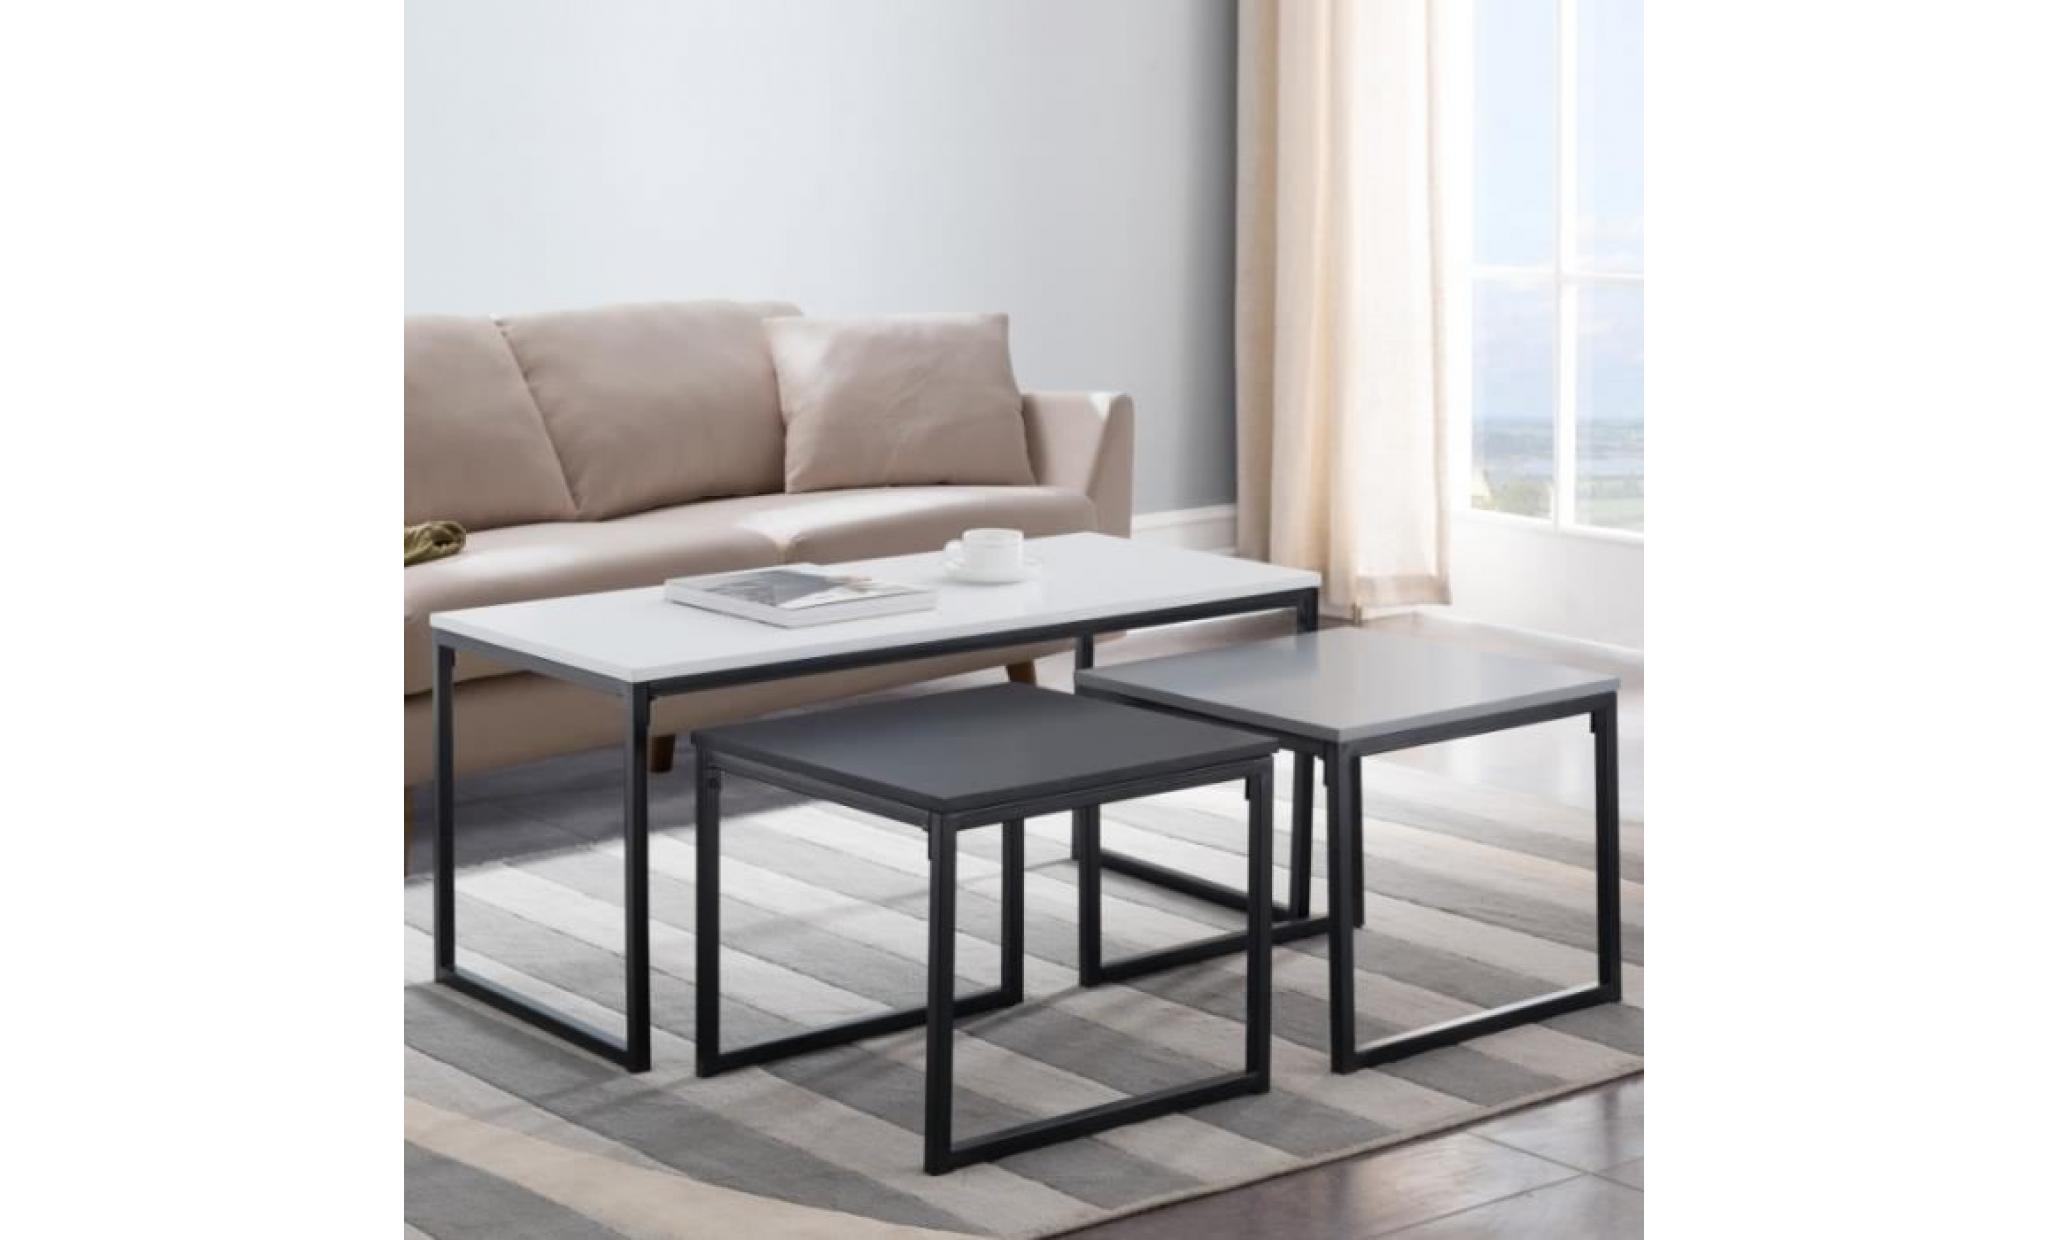 ensemble de tables basses   monochrome   3 tables   couleurs : blanche, noire, grise   style industriel   style scandi